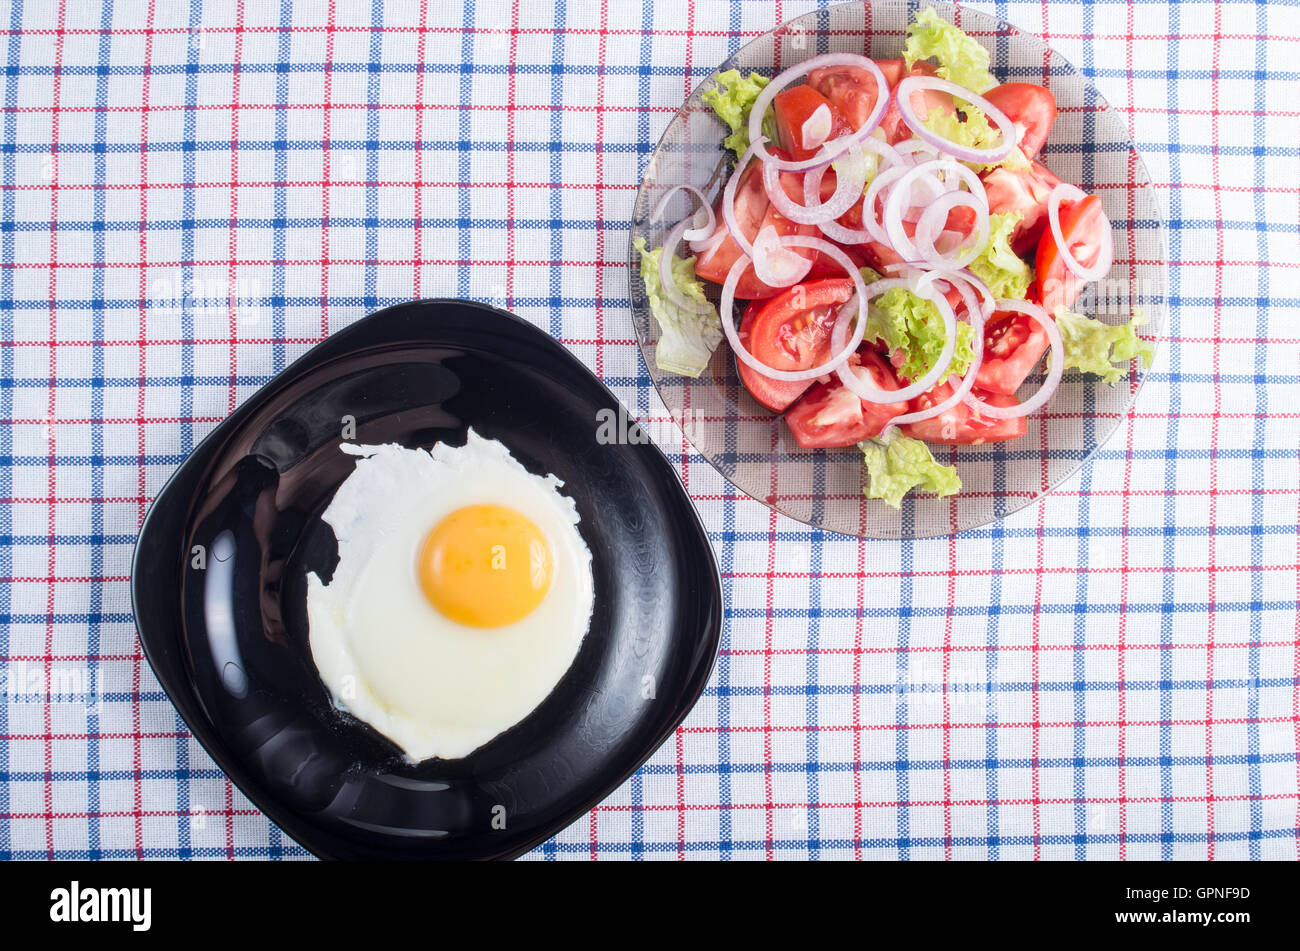 Vue de dessus de la surface de la table avec une plaque noire avec un œuf frit et une petite portion de Salade de tomates sur un tissu tablecl Banque D'Images